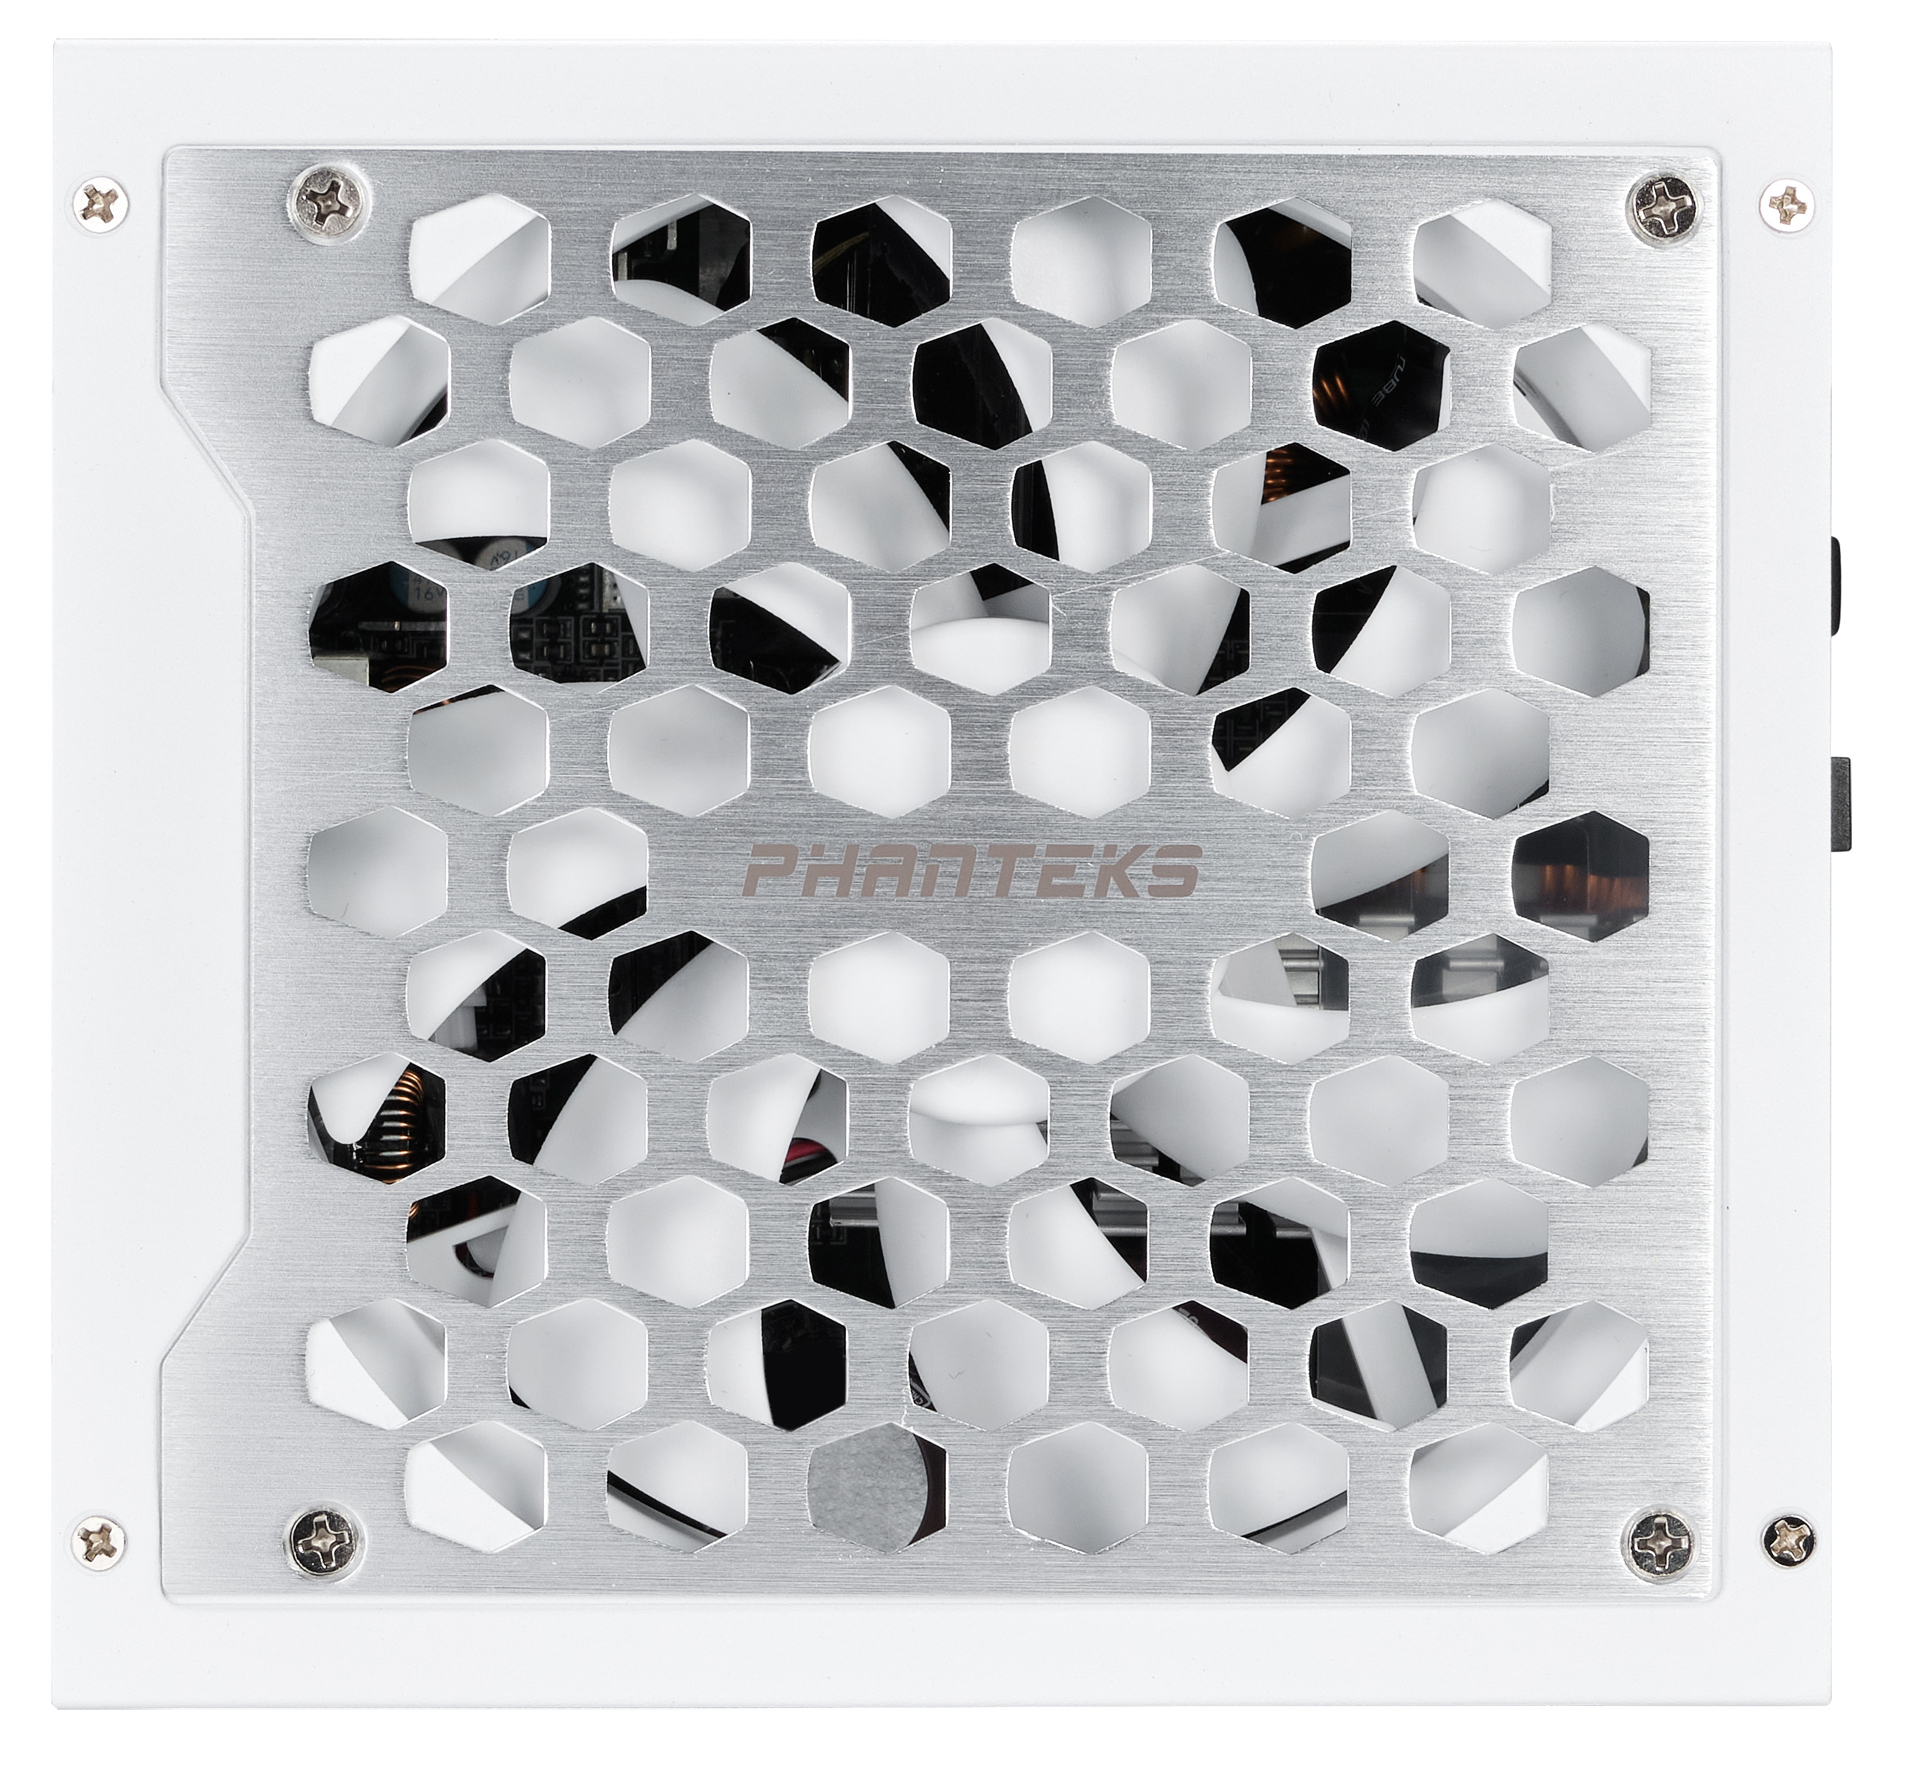 Phanteks - Fonte Modular Phanteks Revolt ATX 3.0 PCIe 5.0 1000W Platinum Branca (Sem Cabos Incluídos)